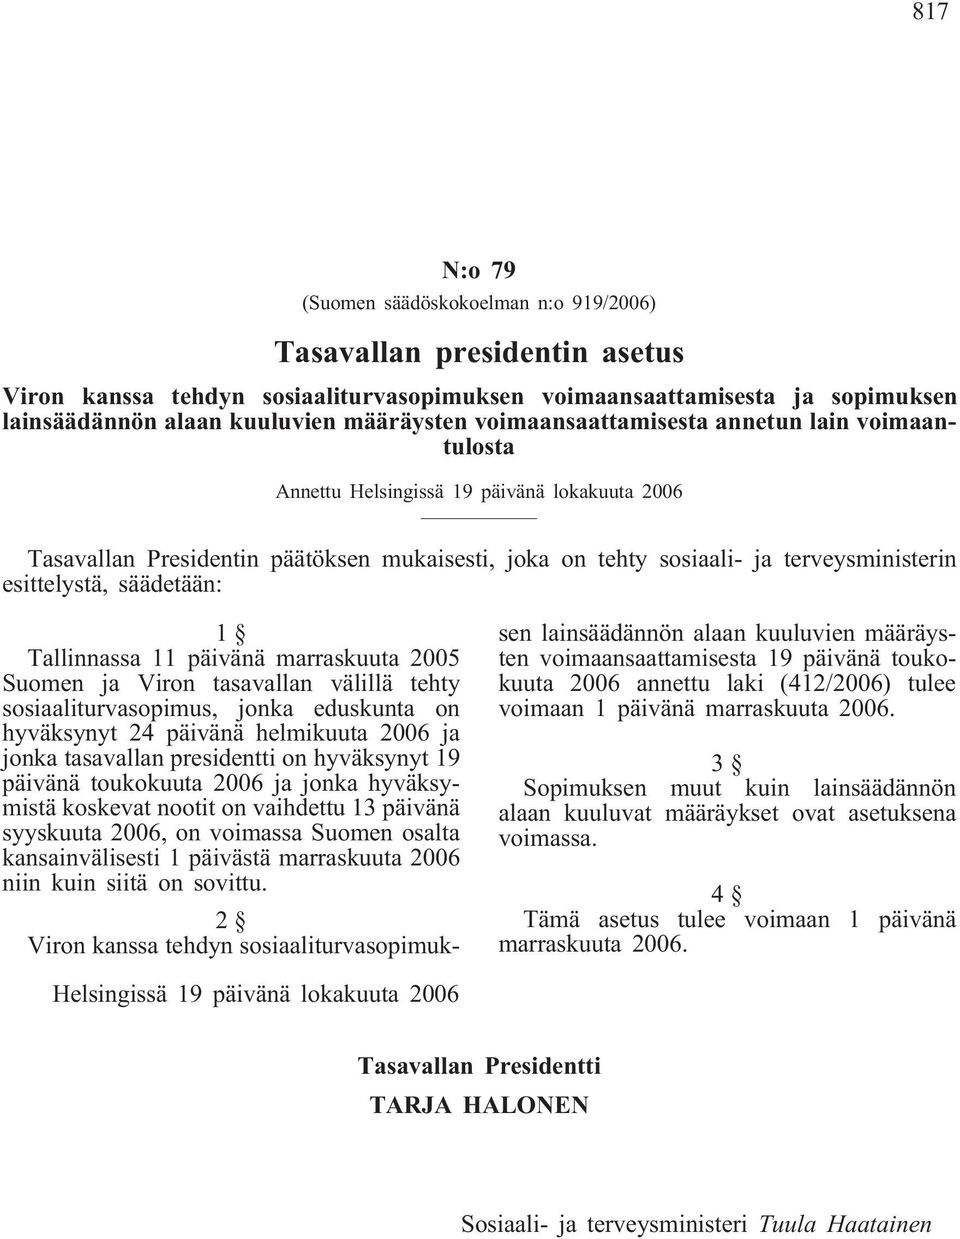 säädetään: 1 Tallinnassa 11 päivänä marraskuuta 2005 Suomen ja Viron tasavallan välillä tehty sosiaaliturvasopimus, jonka eduskunta on hyväksynyt 24 päivänä helmikuuta 2006 ja jonka tasavallan